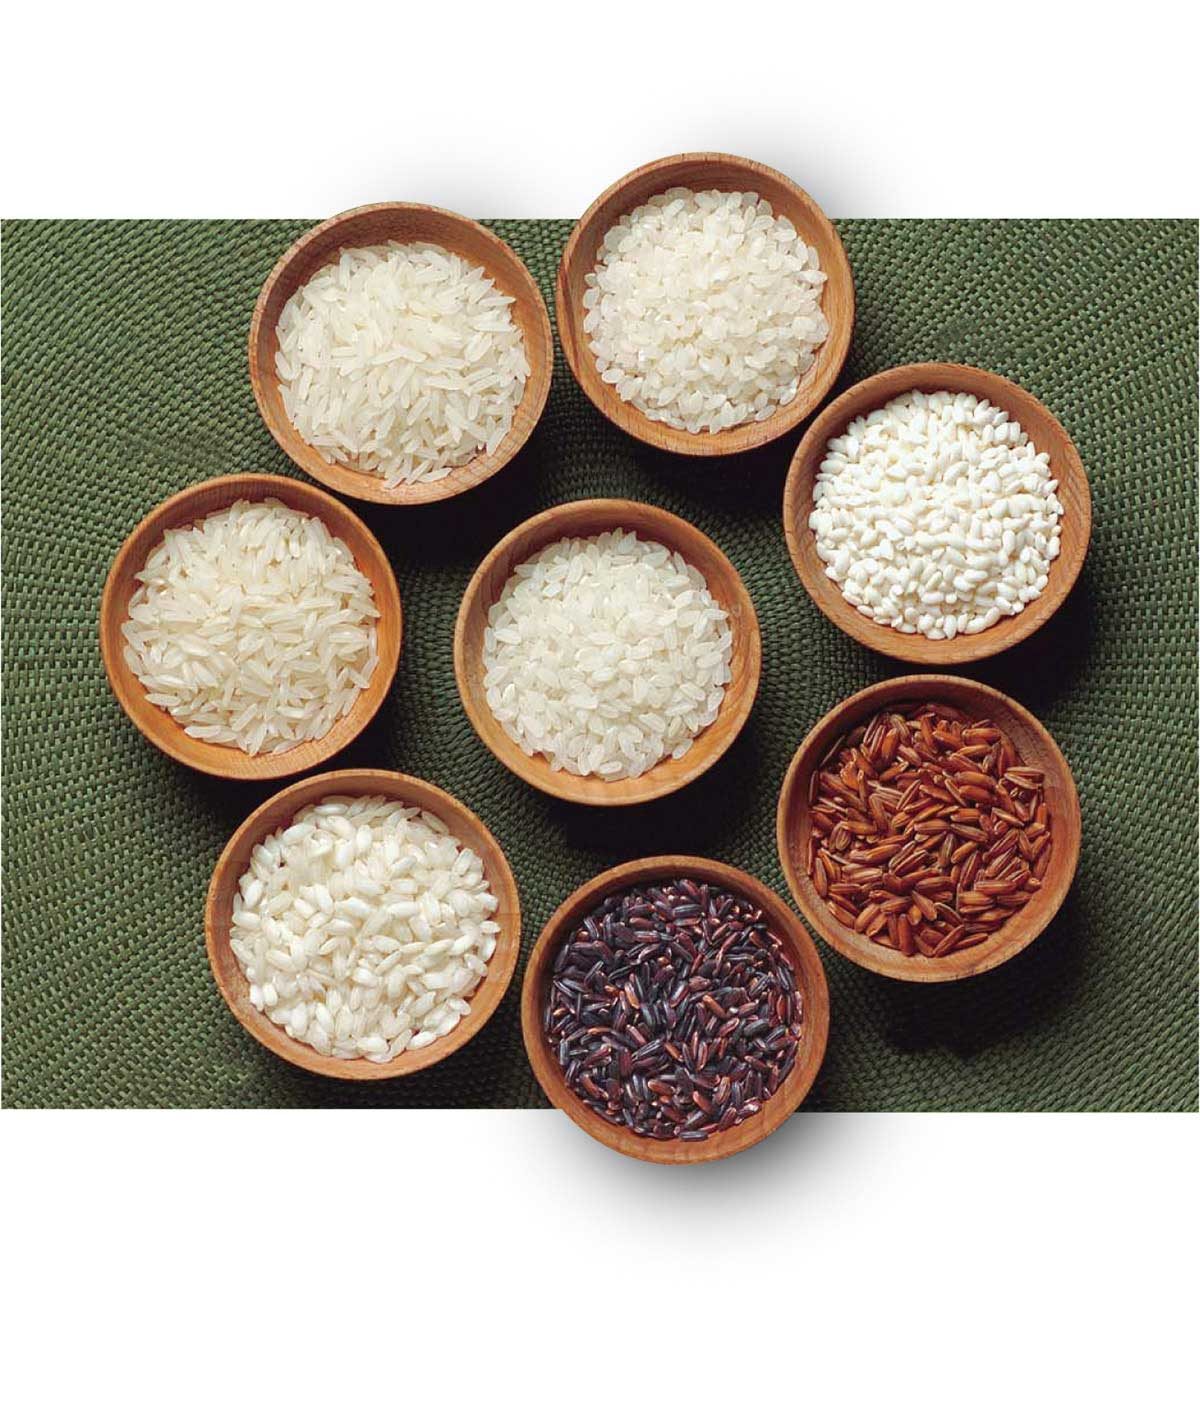 稻米的营养价值 pic